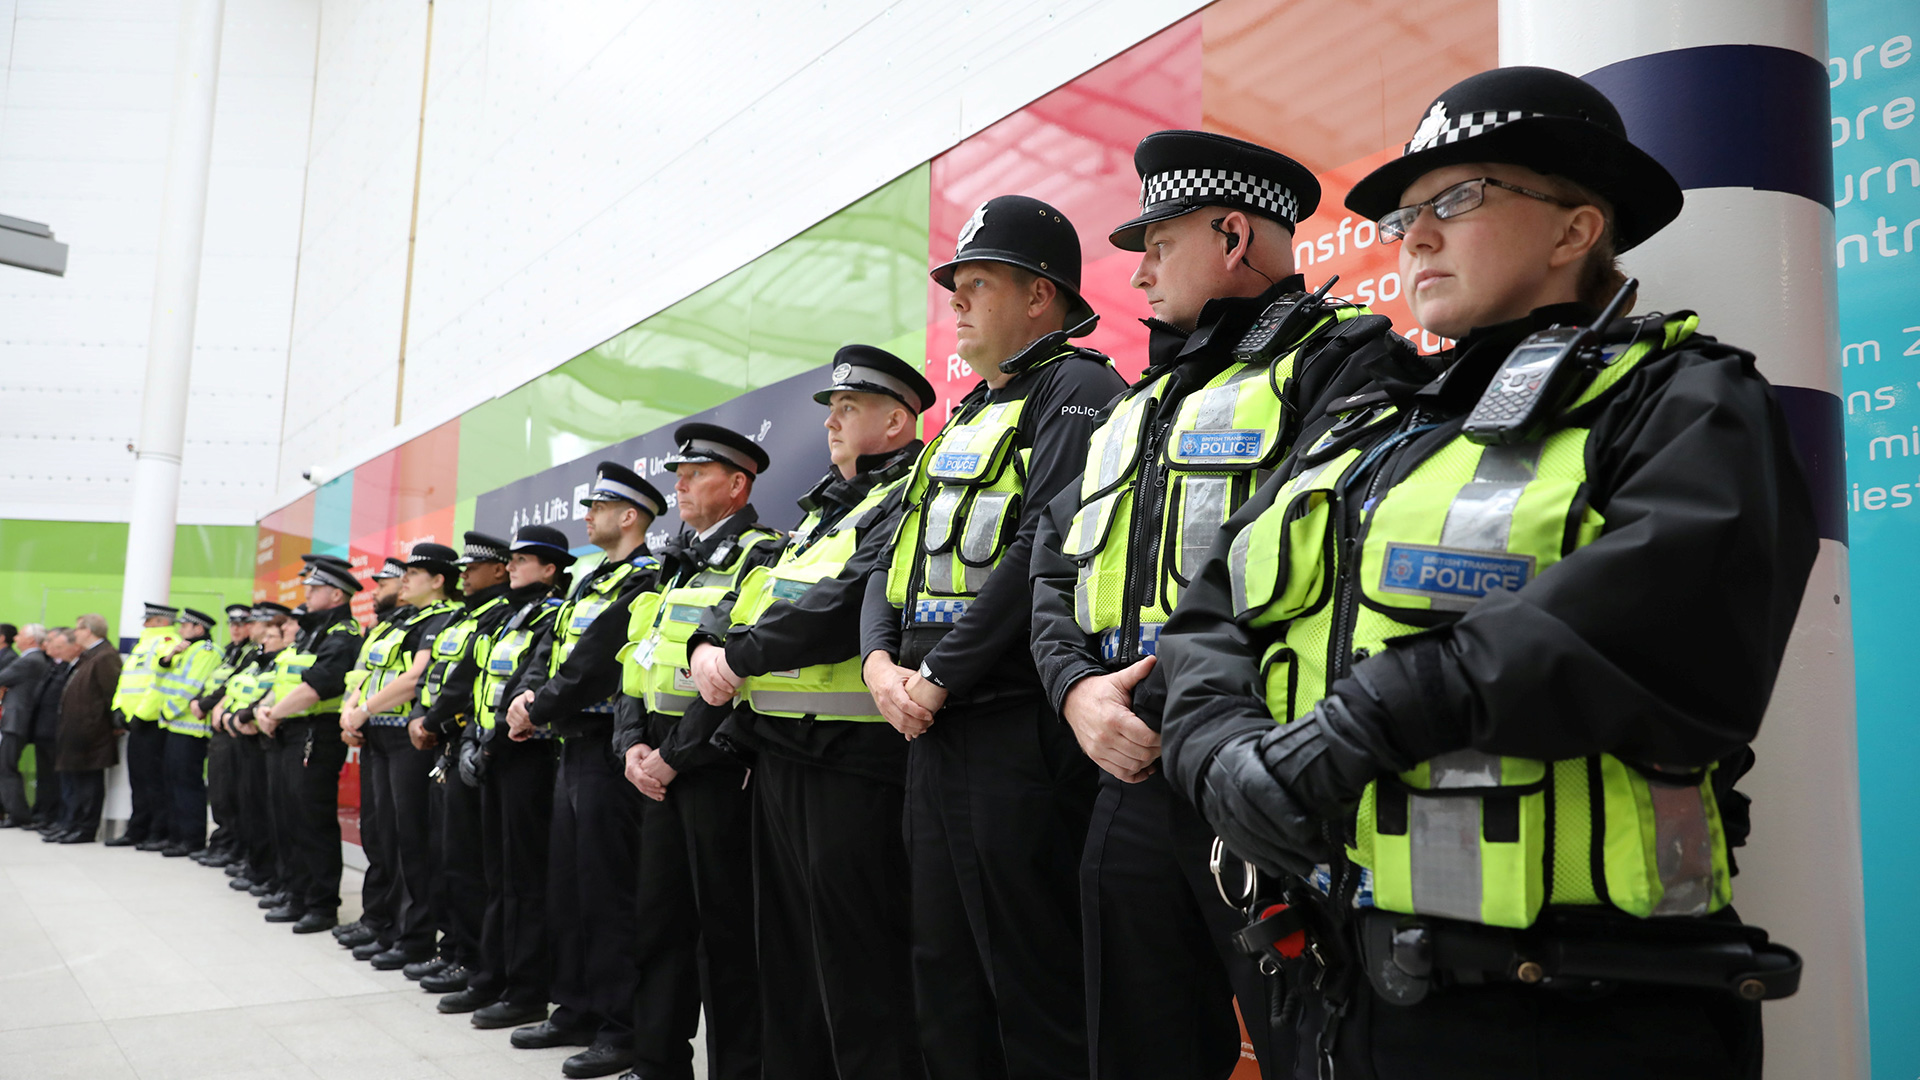 La Policía identifica al tercer atacante del atentado de Londres